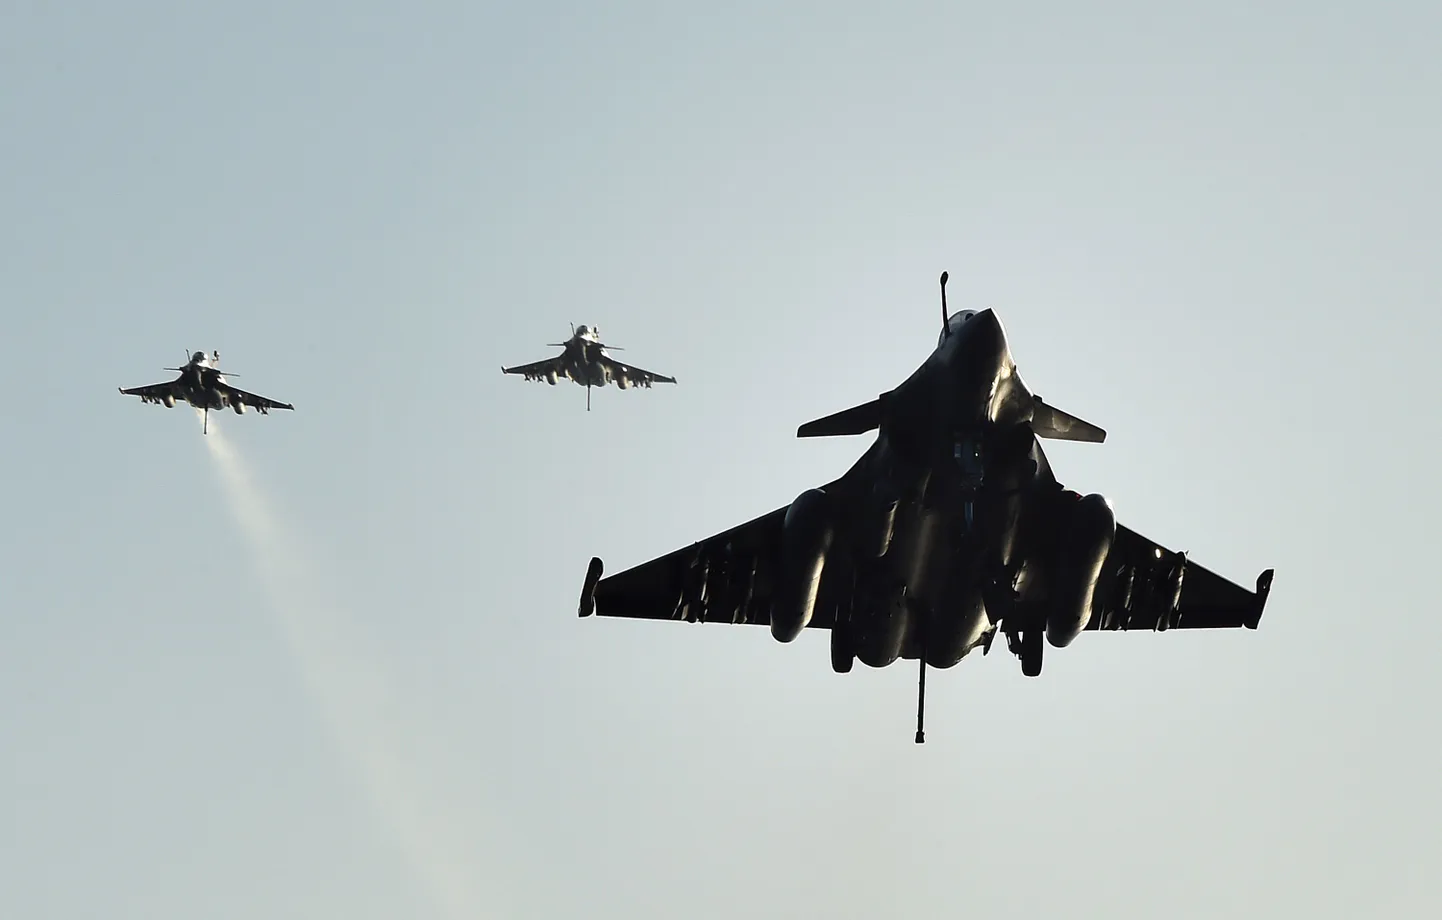 Prantsuse Rafale-tüüpi sõjalennukid, mis viivad läbi õhurünnakuid Süürias ja Iraagis.